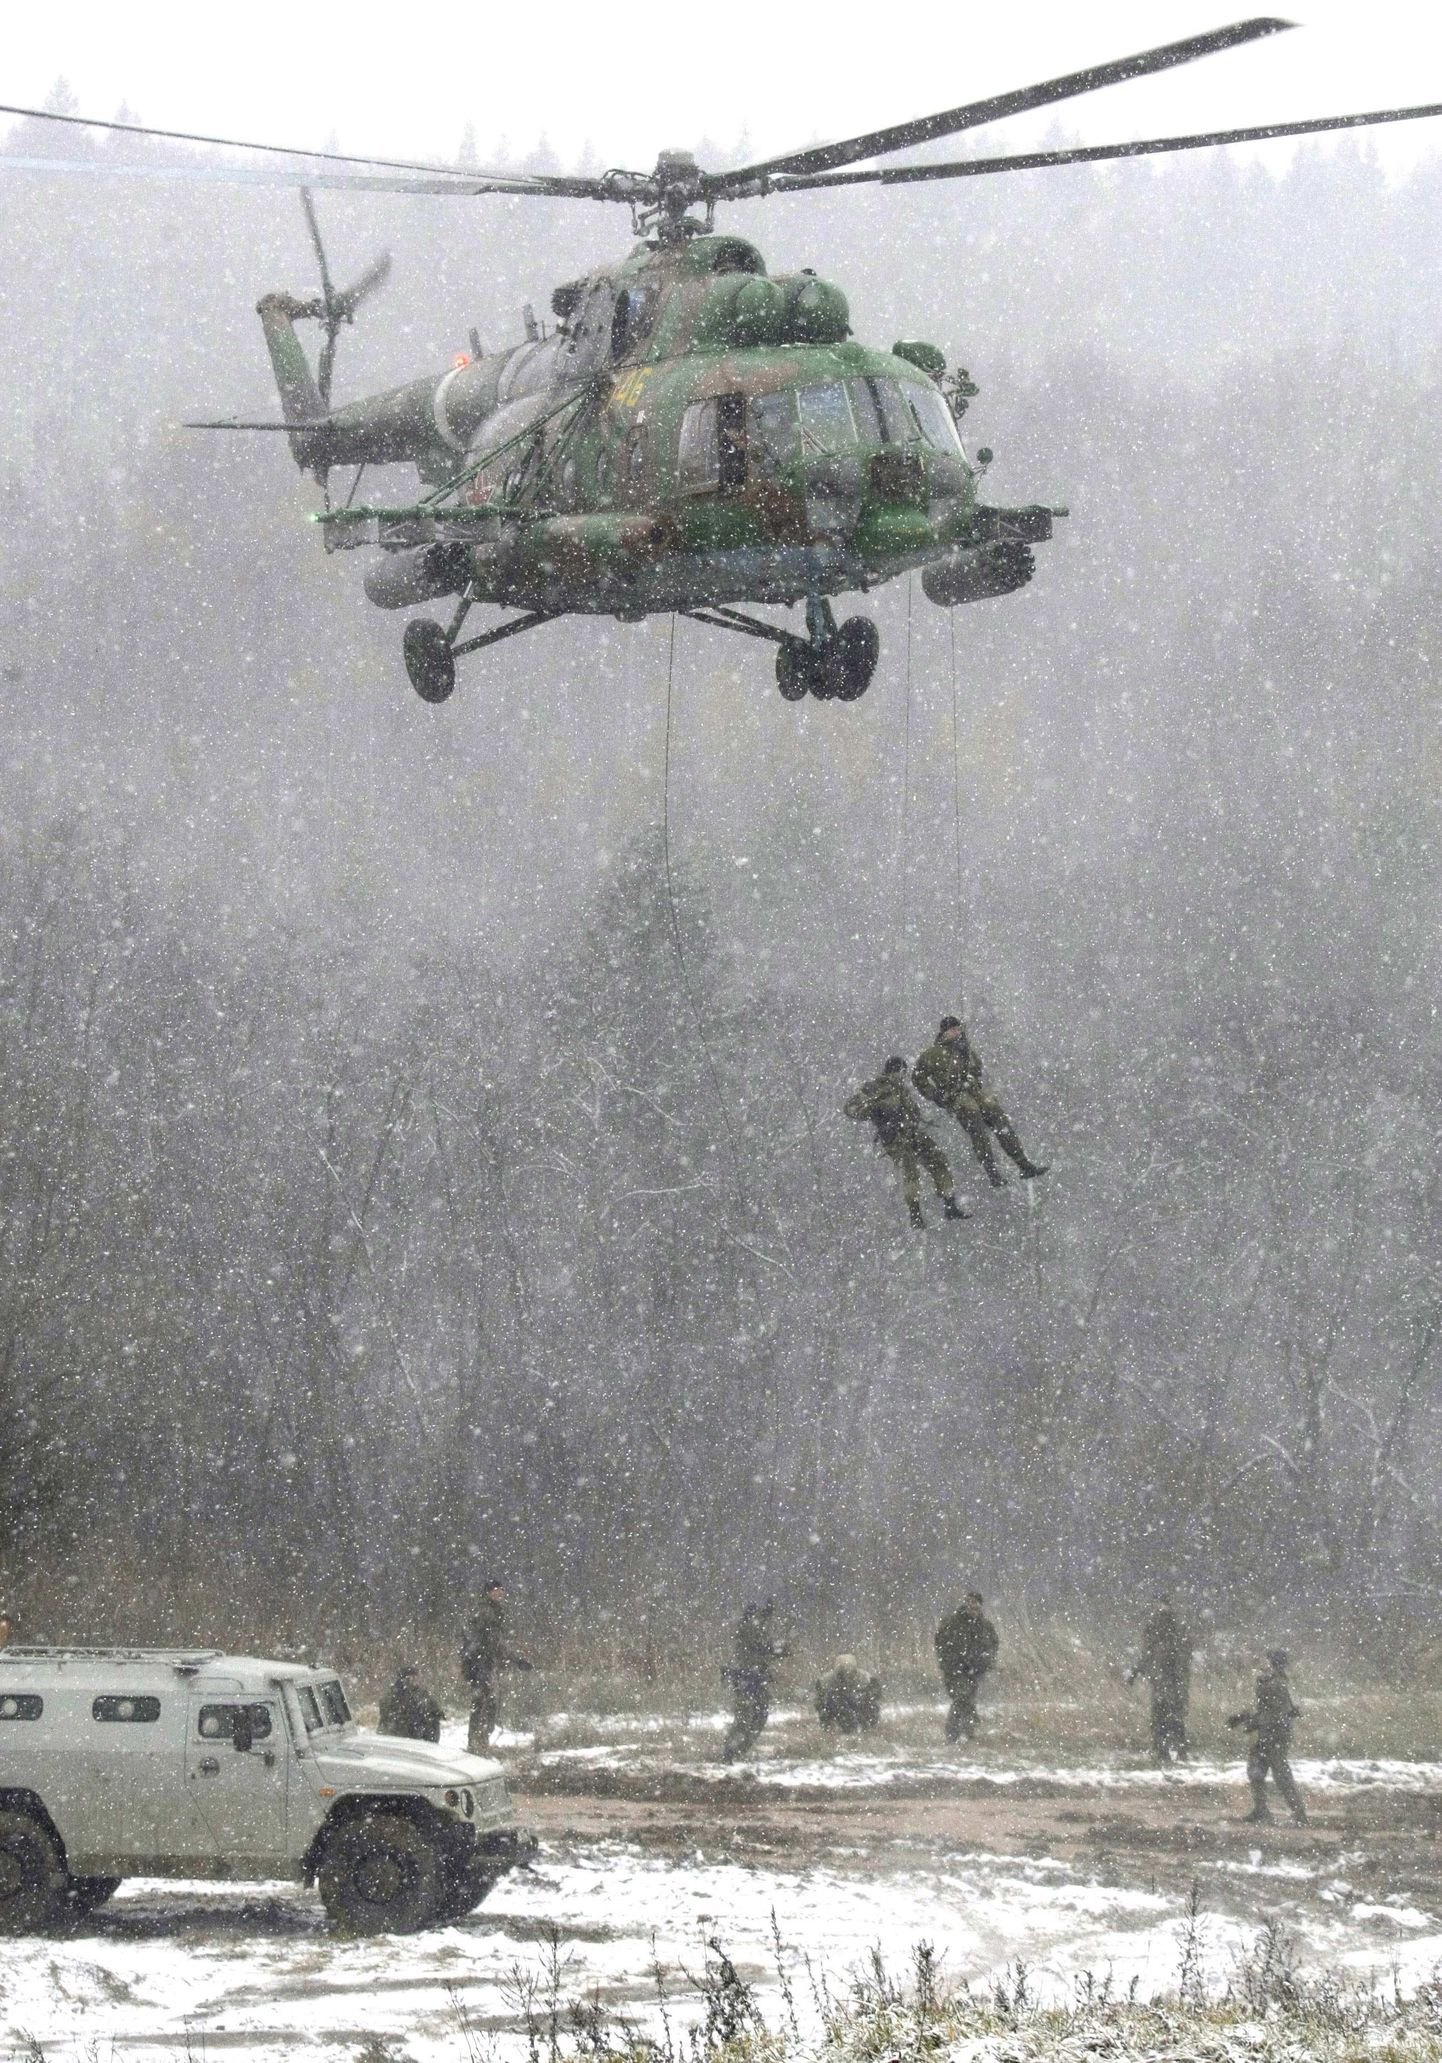 Kiirreageerimisüksuse sõdurid õppusel Moskva lähistel.